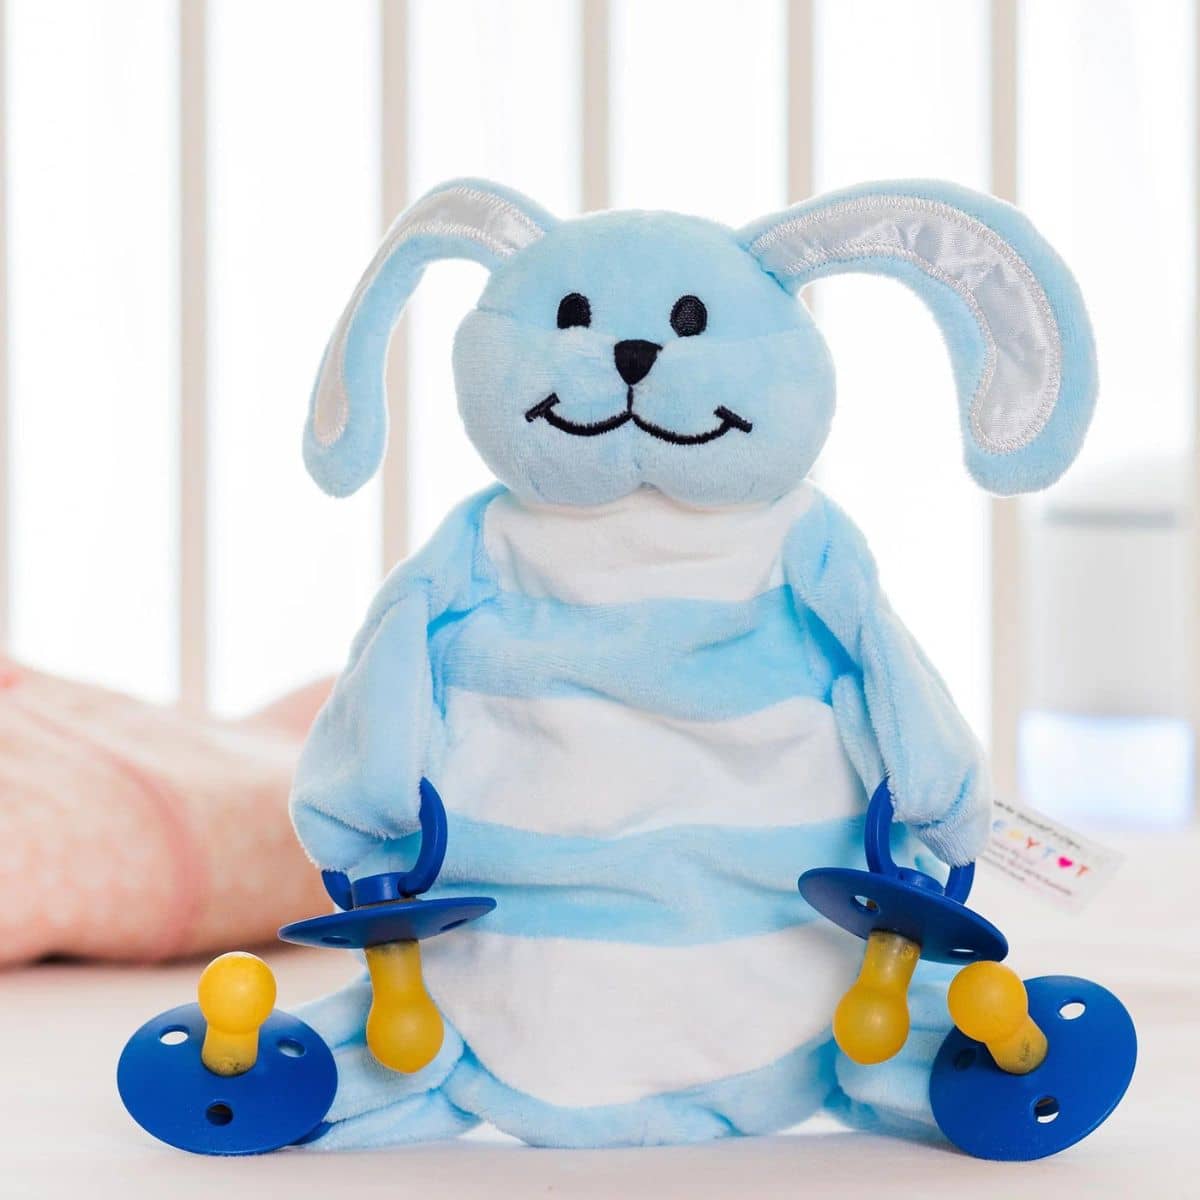 Sleepytot Baby Comforter - Bunny Blue